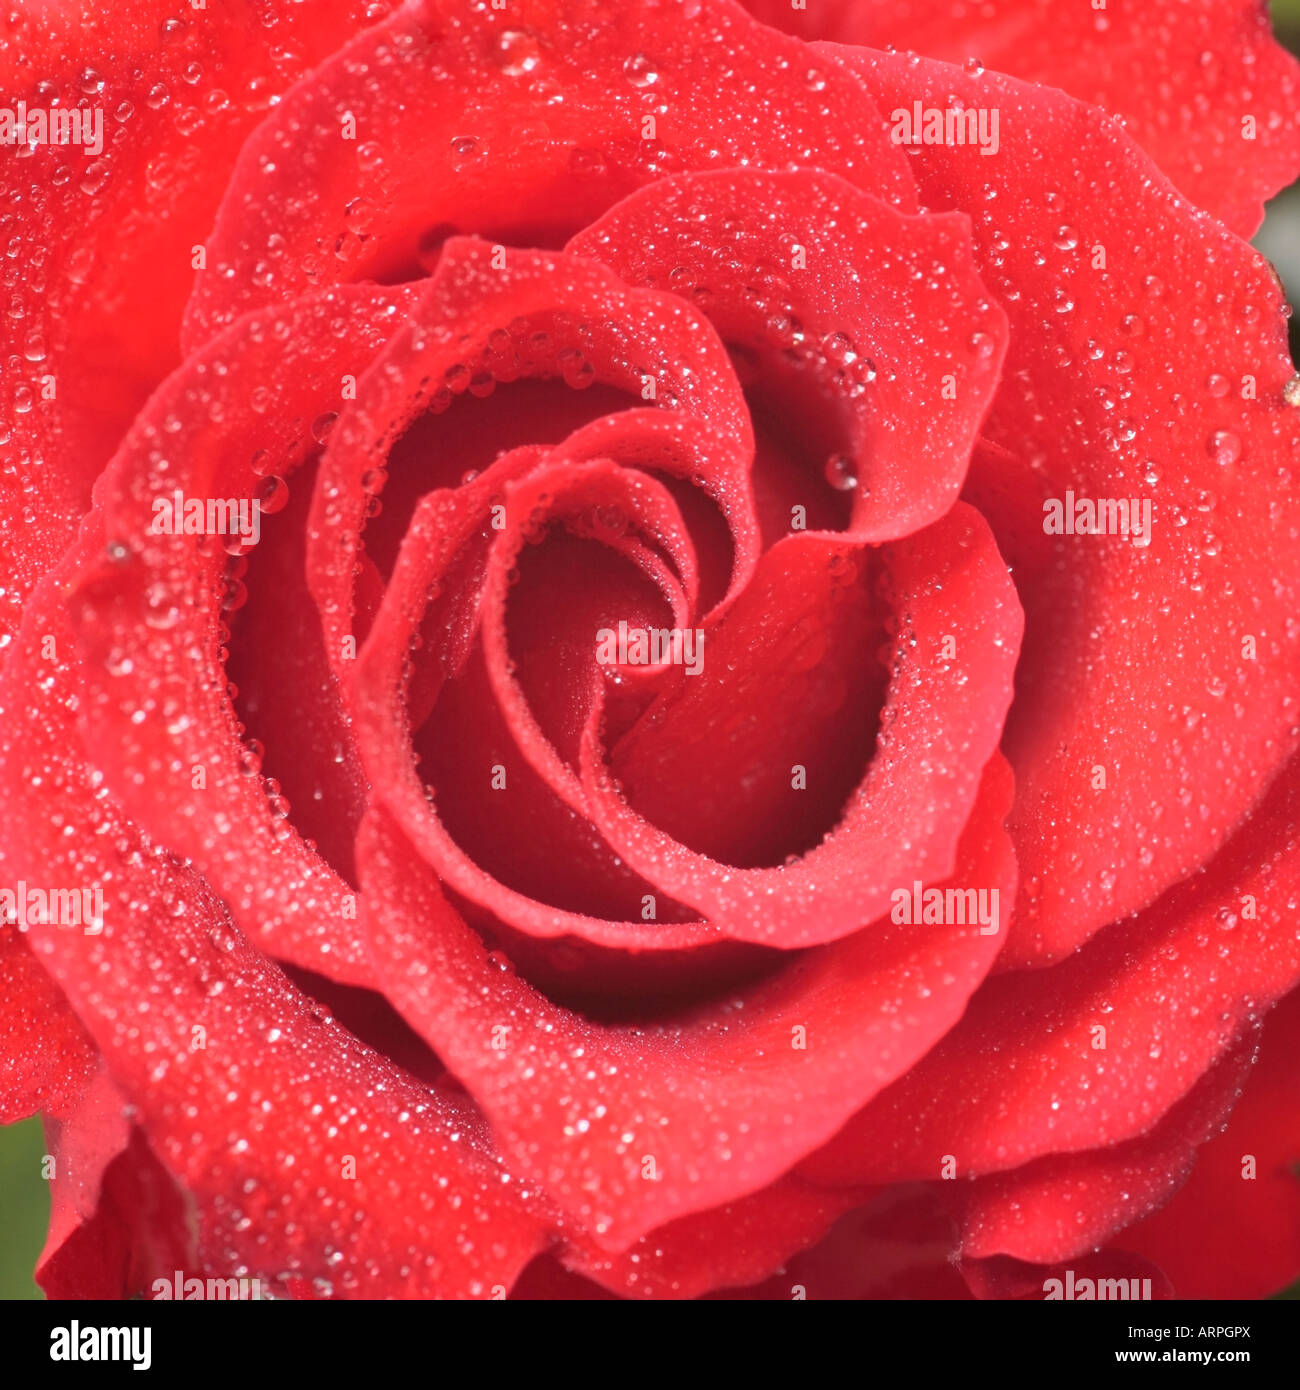 Primo piano dettaglio di una singola rosa rossa ricoperta di gocce d'acqua Foto Stock